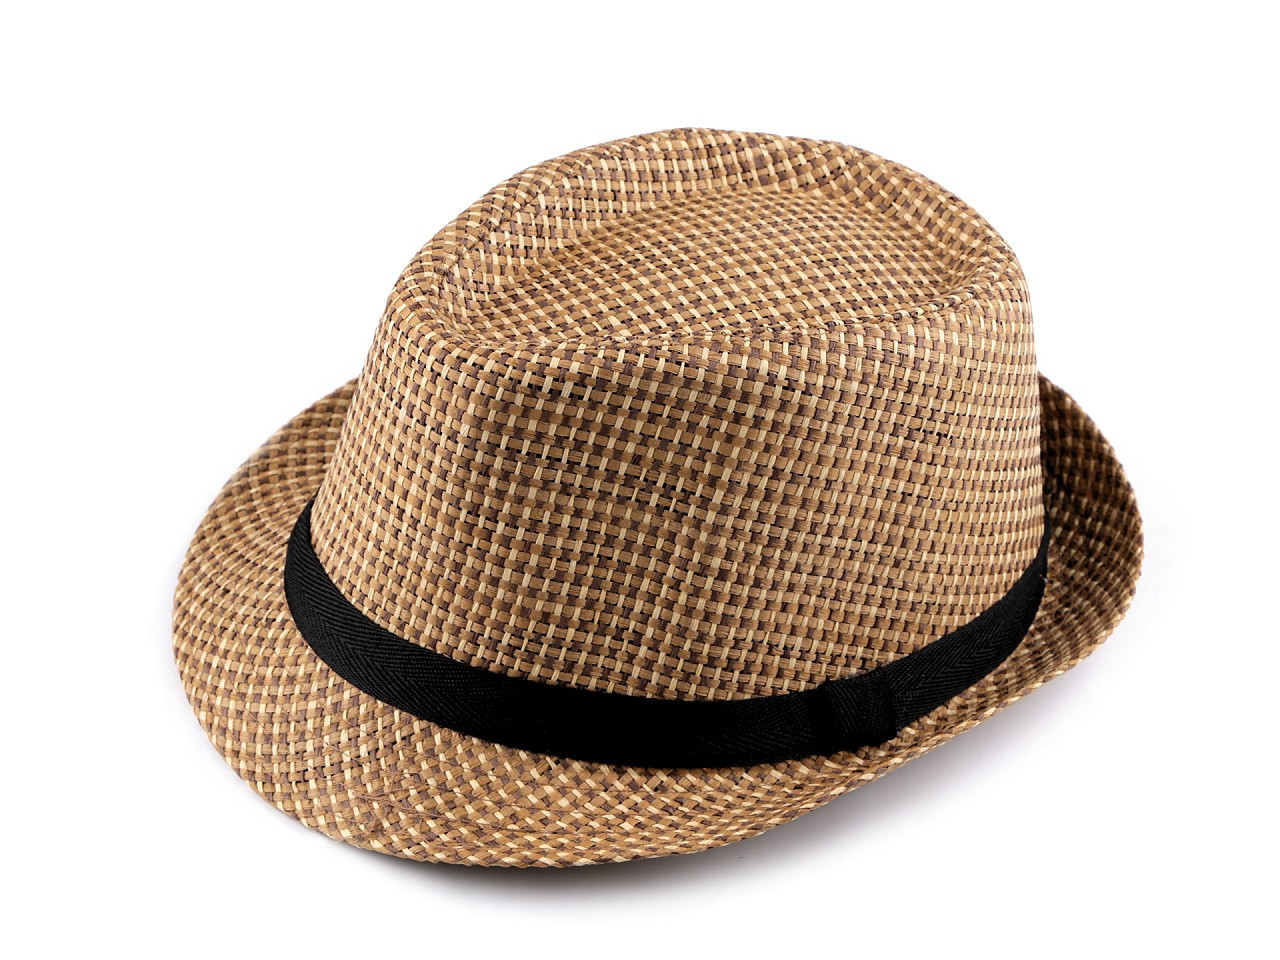 Letní klobouk / slamák unisex, barva 3 (vel. 57) přírodní stř.